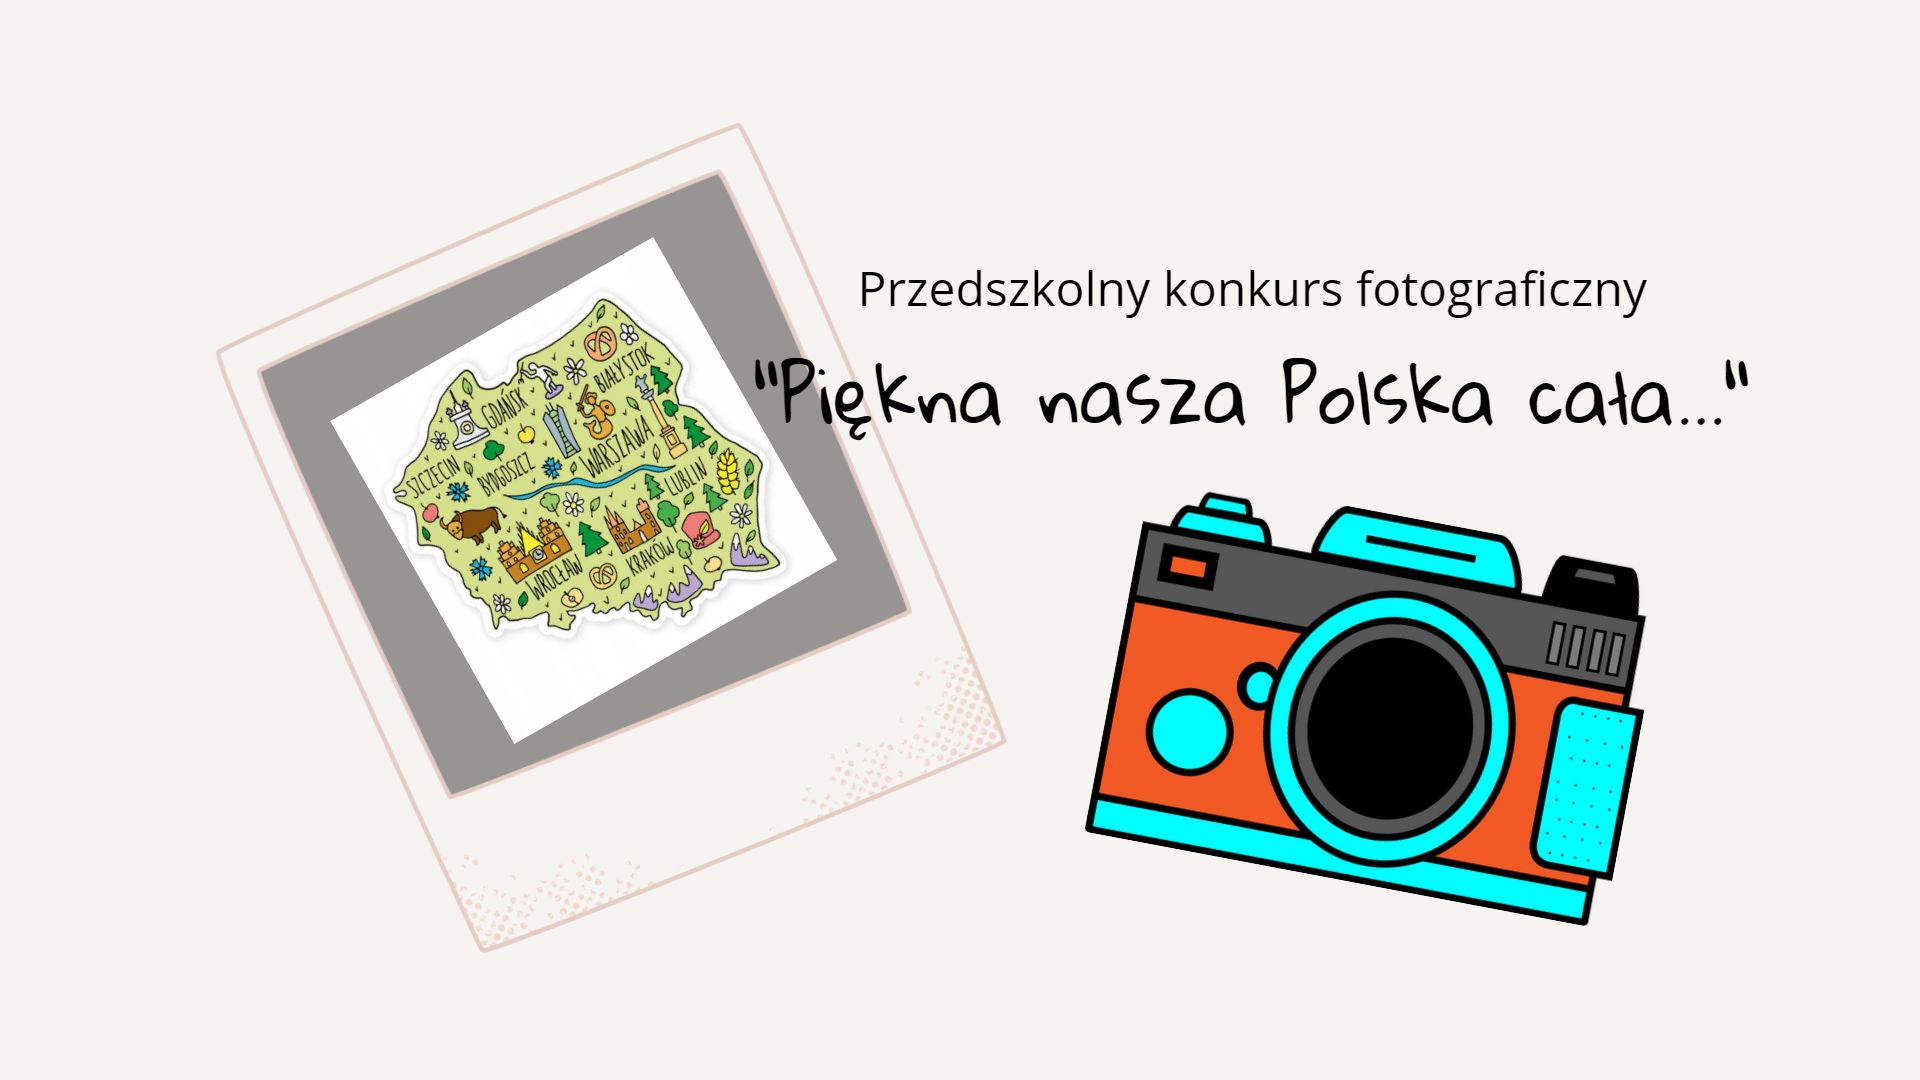 Przedszkolny konkurs fotograficzny „Piękna nasza Polska cała…”